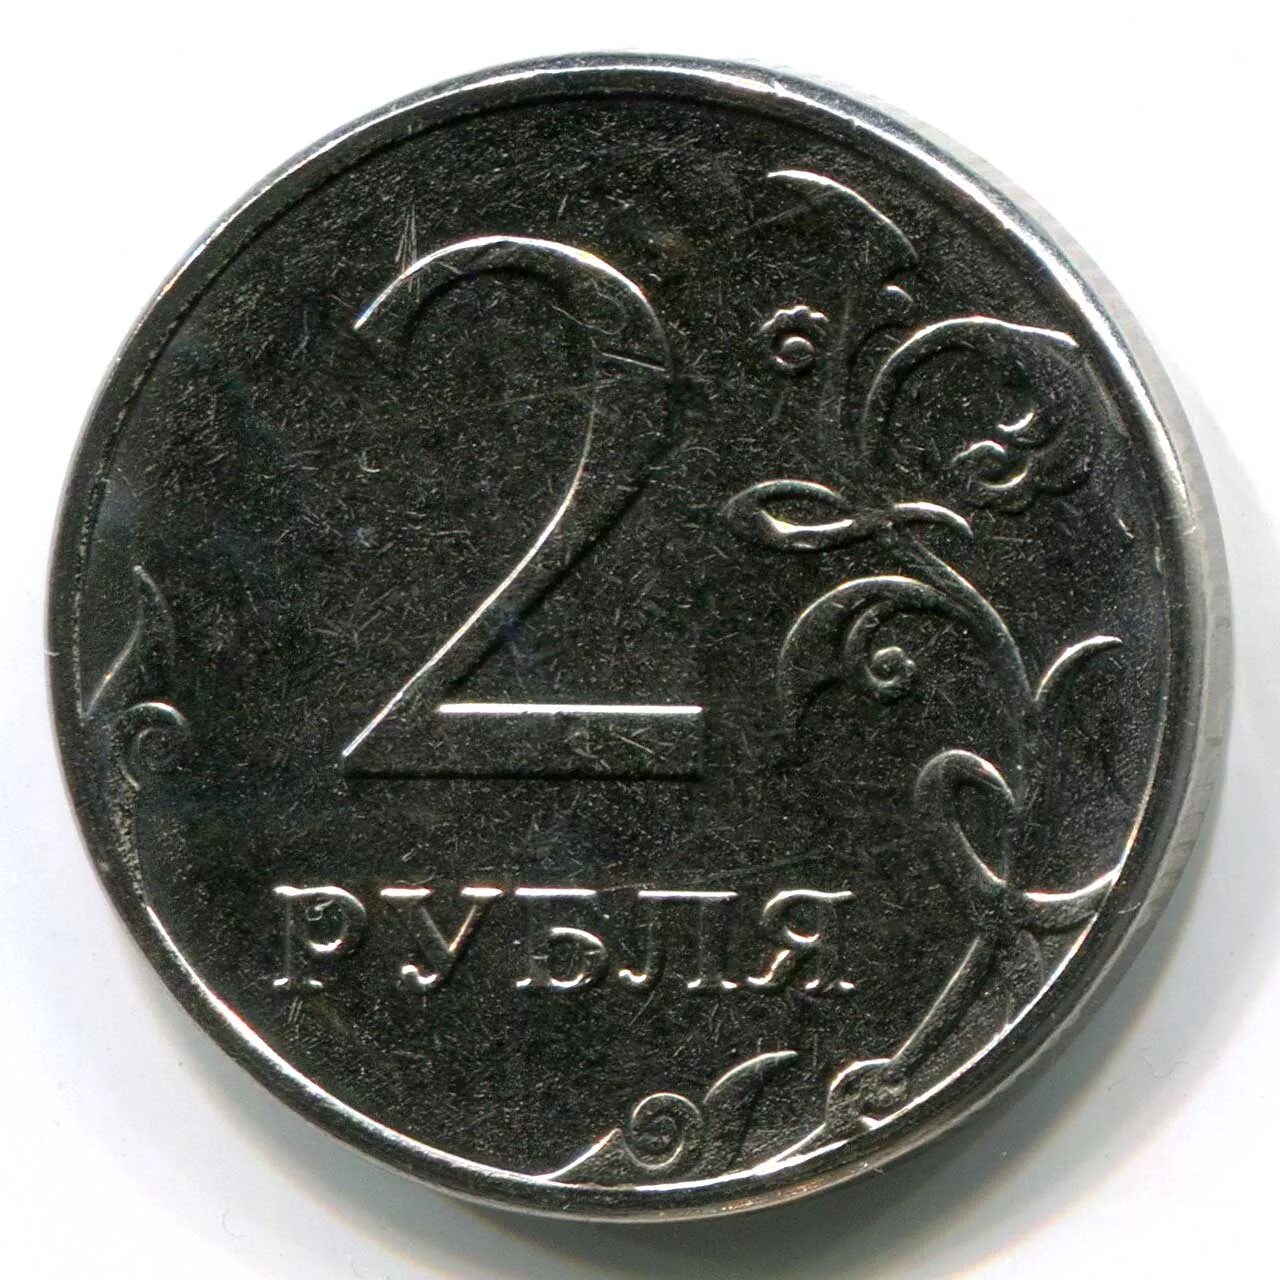 2 Рубля. Монета 2 руб. Монеты России 2 рубля. Рубль. Рубль тараз